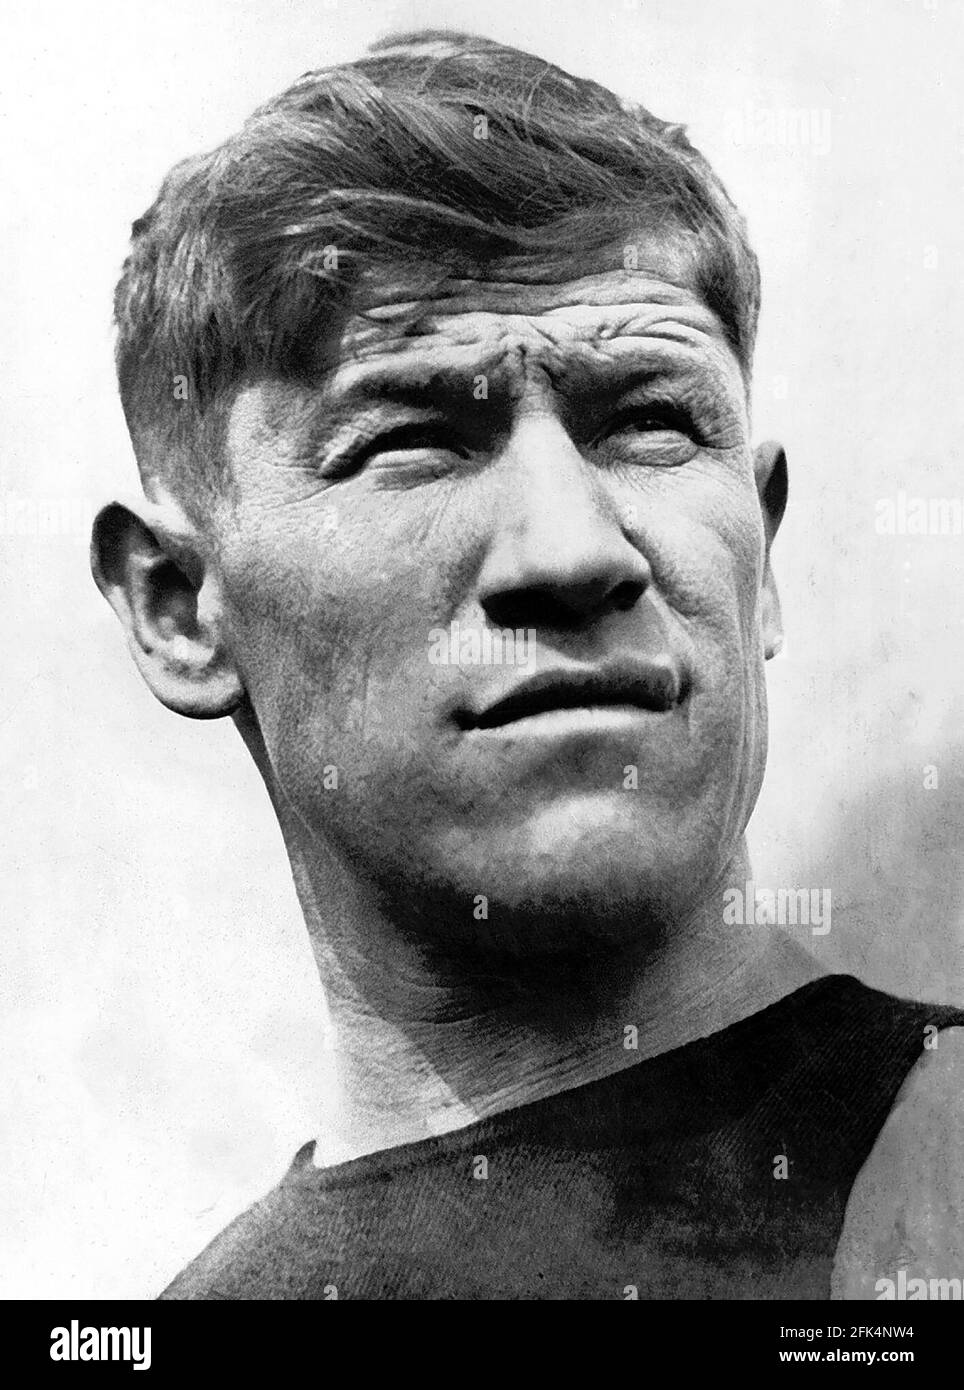 Jim Thorpe. Ritratto dell'atleta americano e medaglia d'oro olimpica, James Francis Thorpe (1887-1953), 1912 Foto Stock